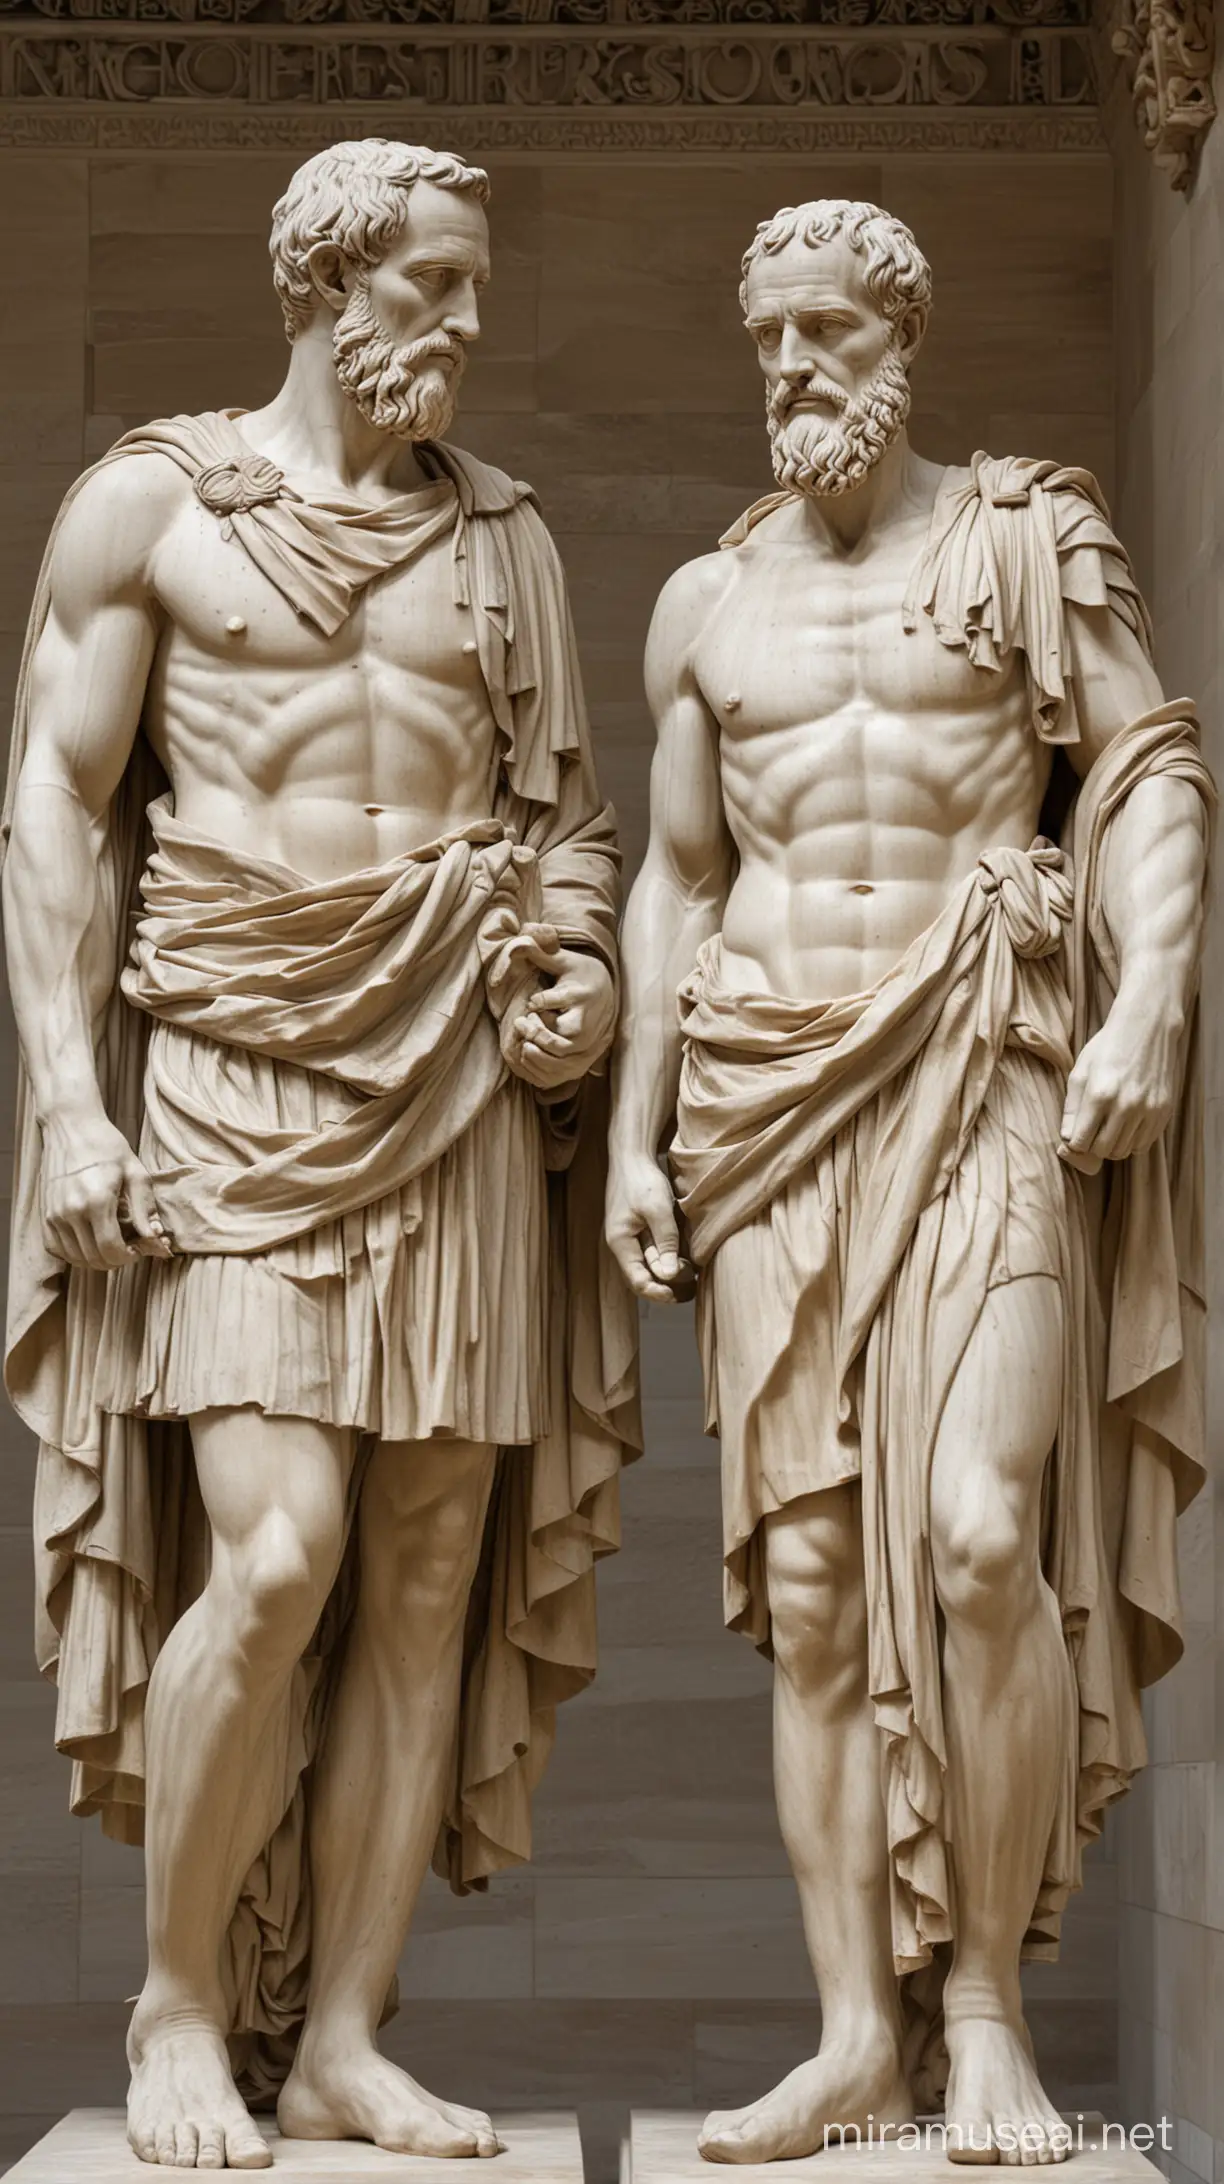 Historic Encounter Herodotus and Caesar in Intellectual Debate